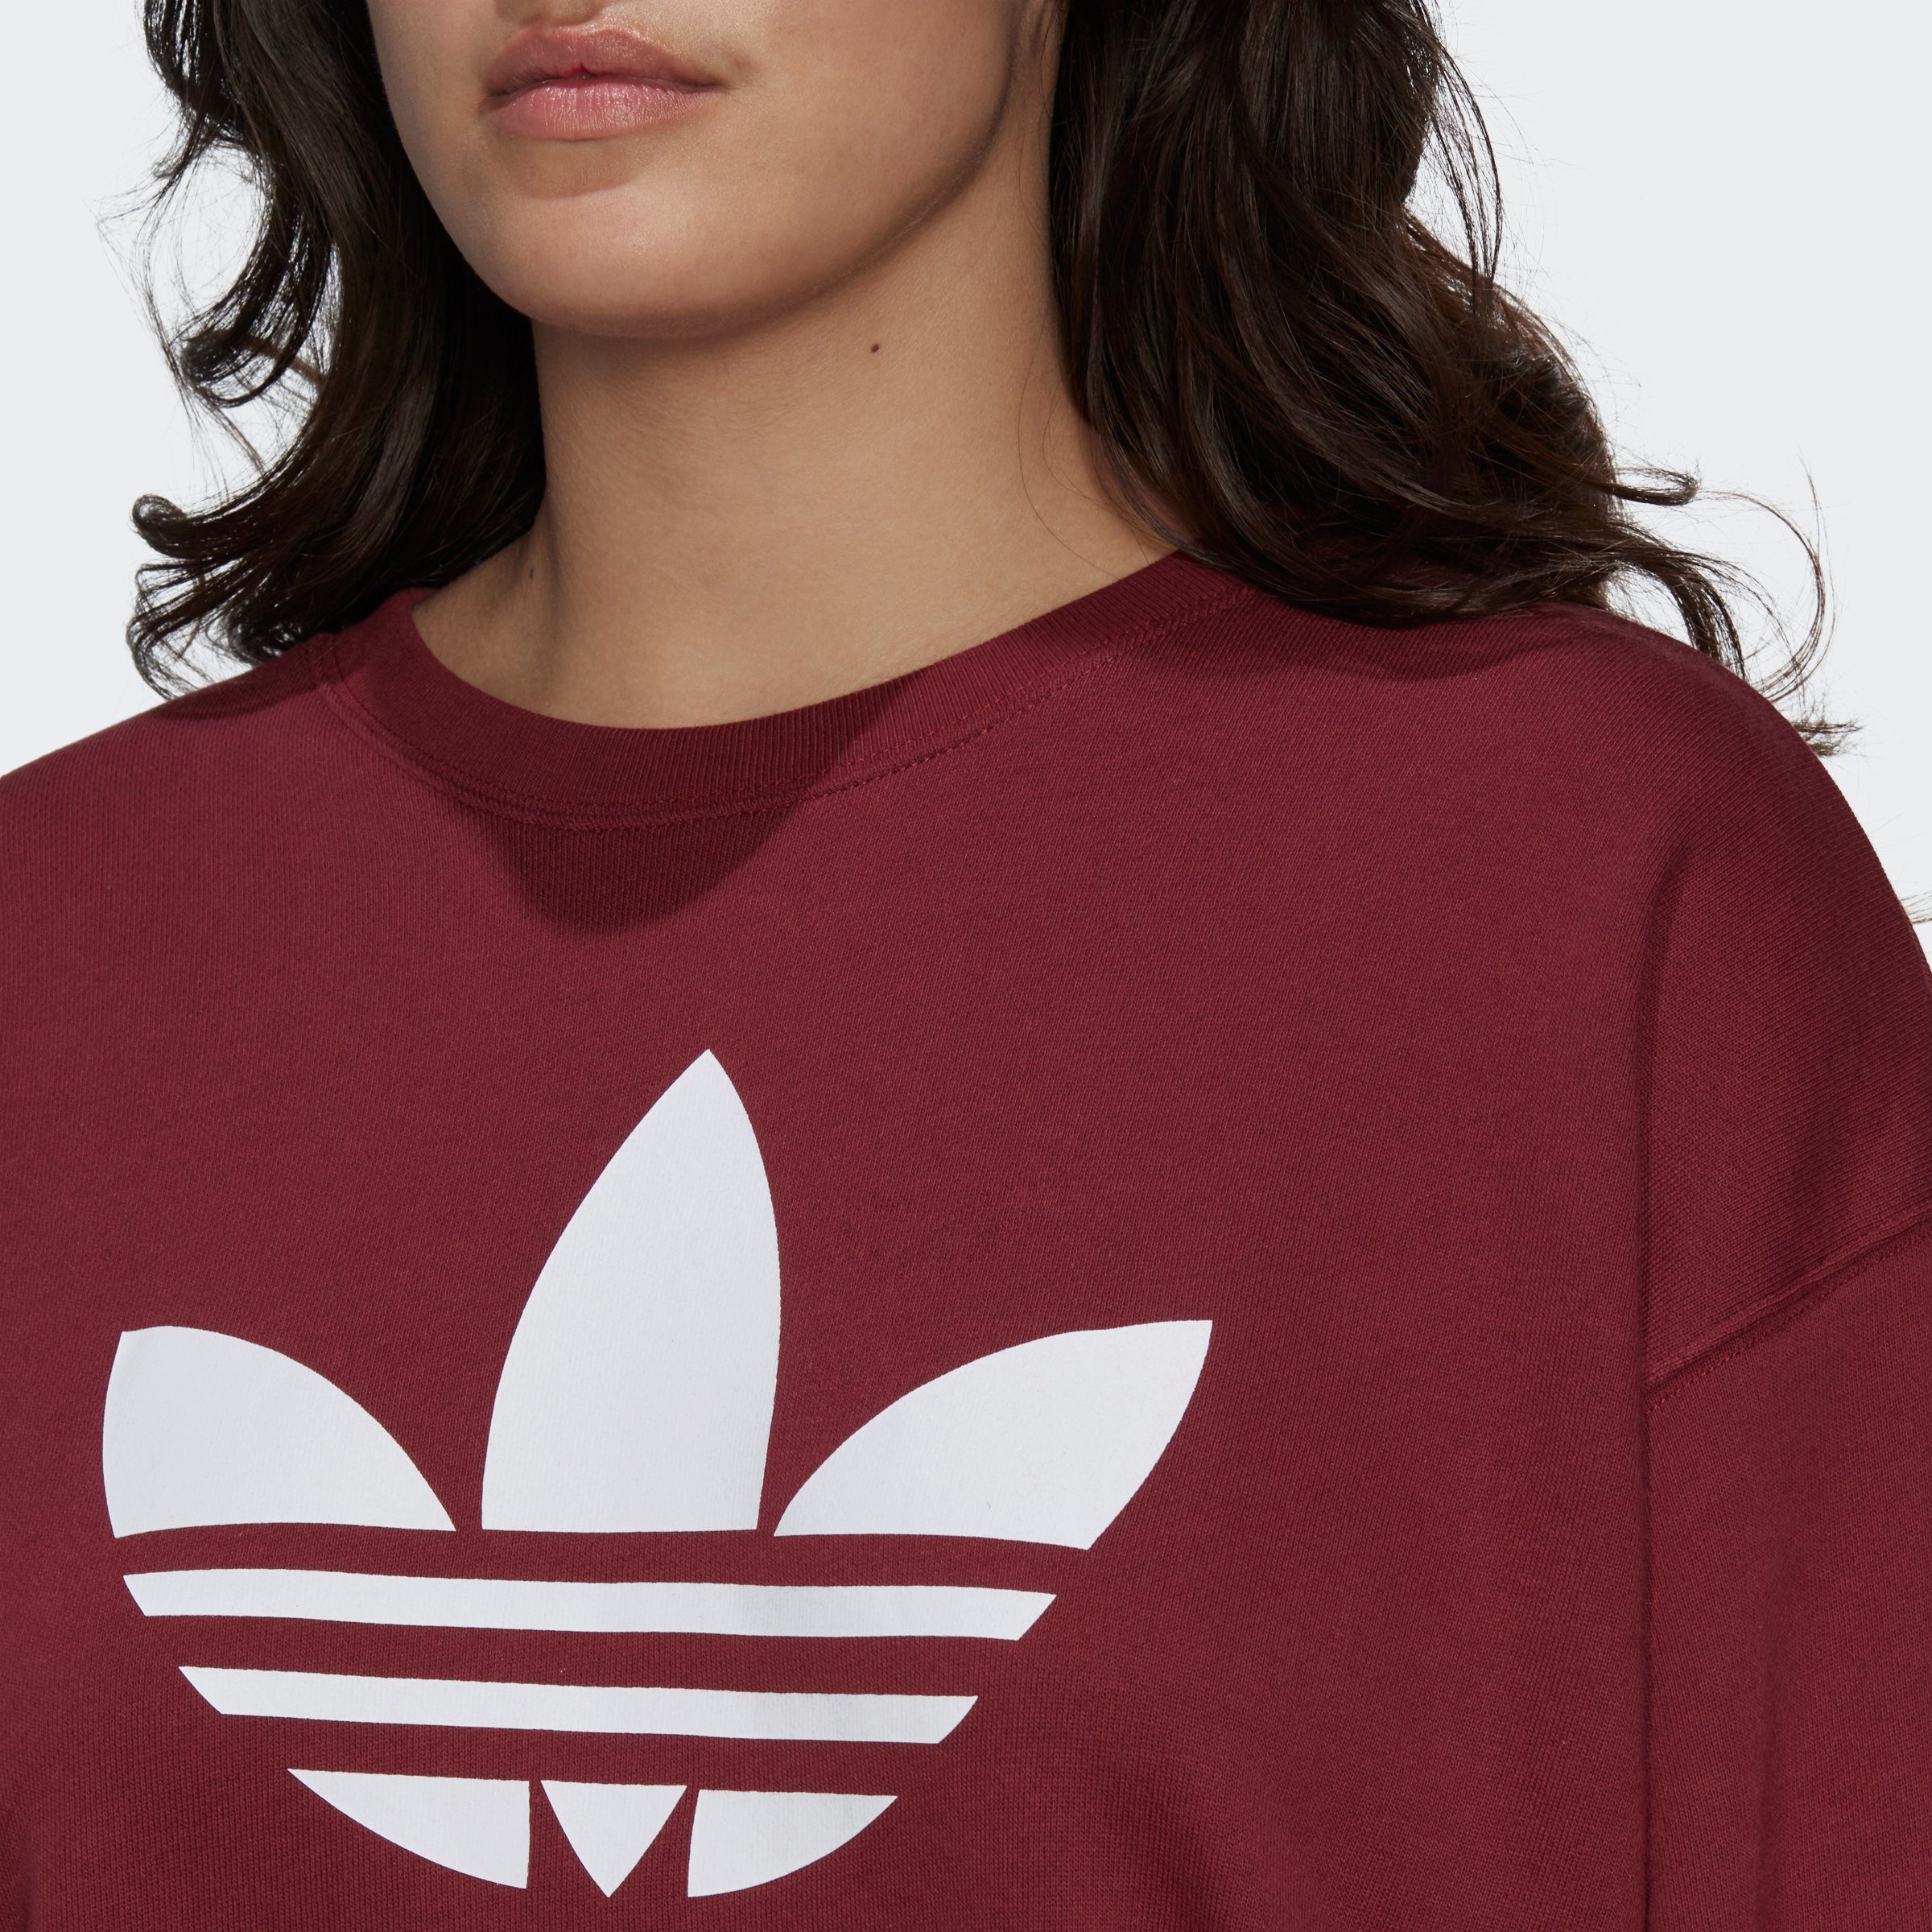 adidas Originals Sweatshirt Shadow – TREFOIL GROSSE Red GRÖSSEN